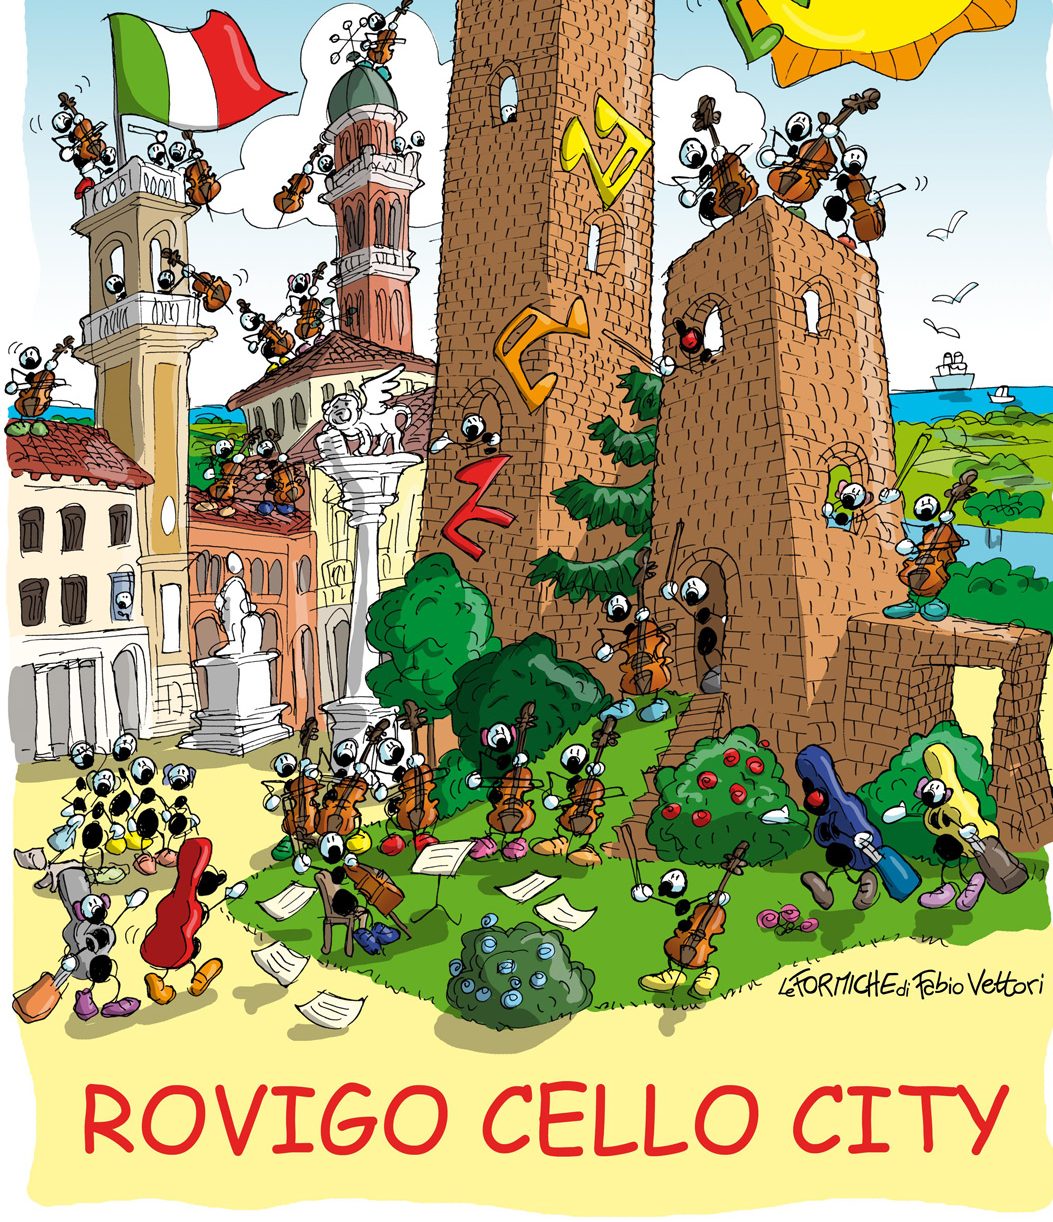 Rovigo Cello City